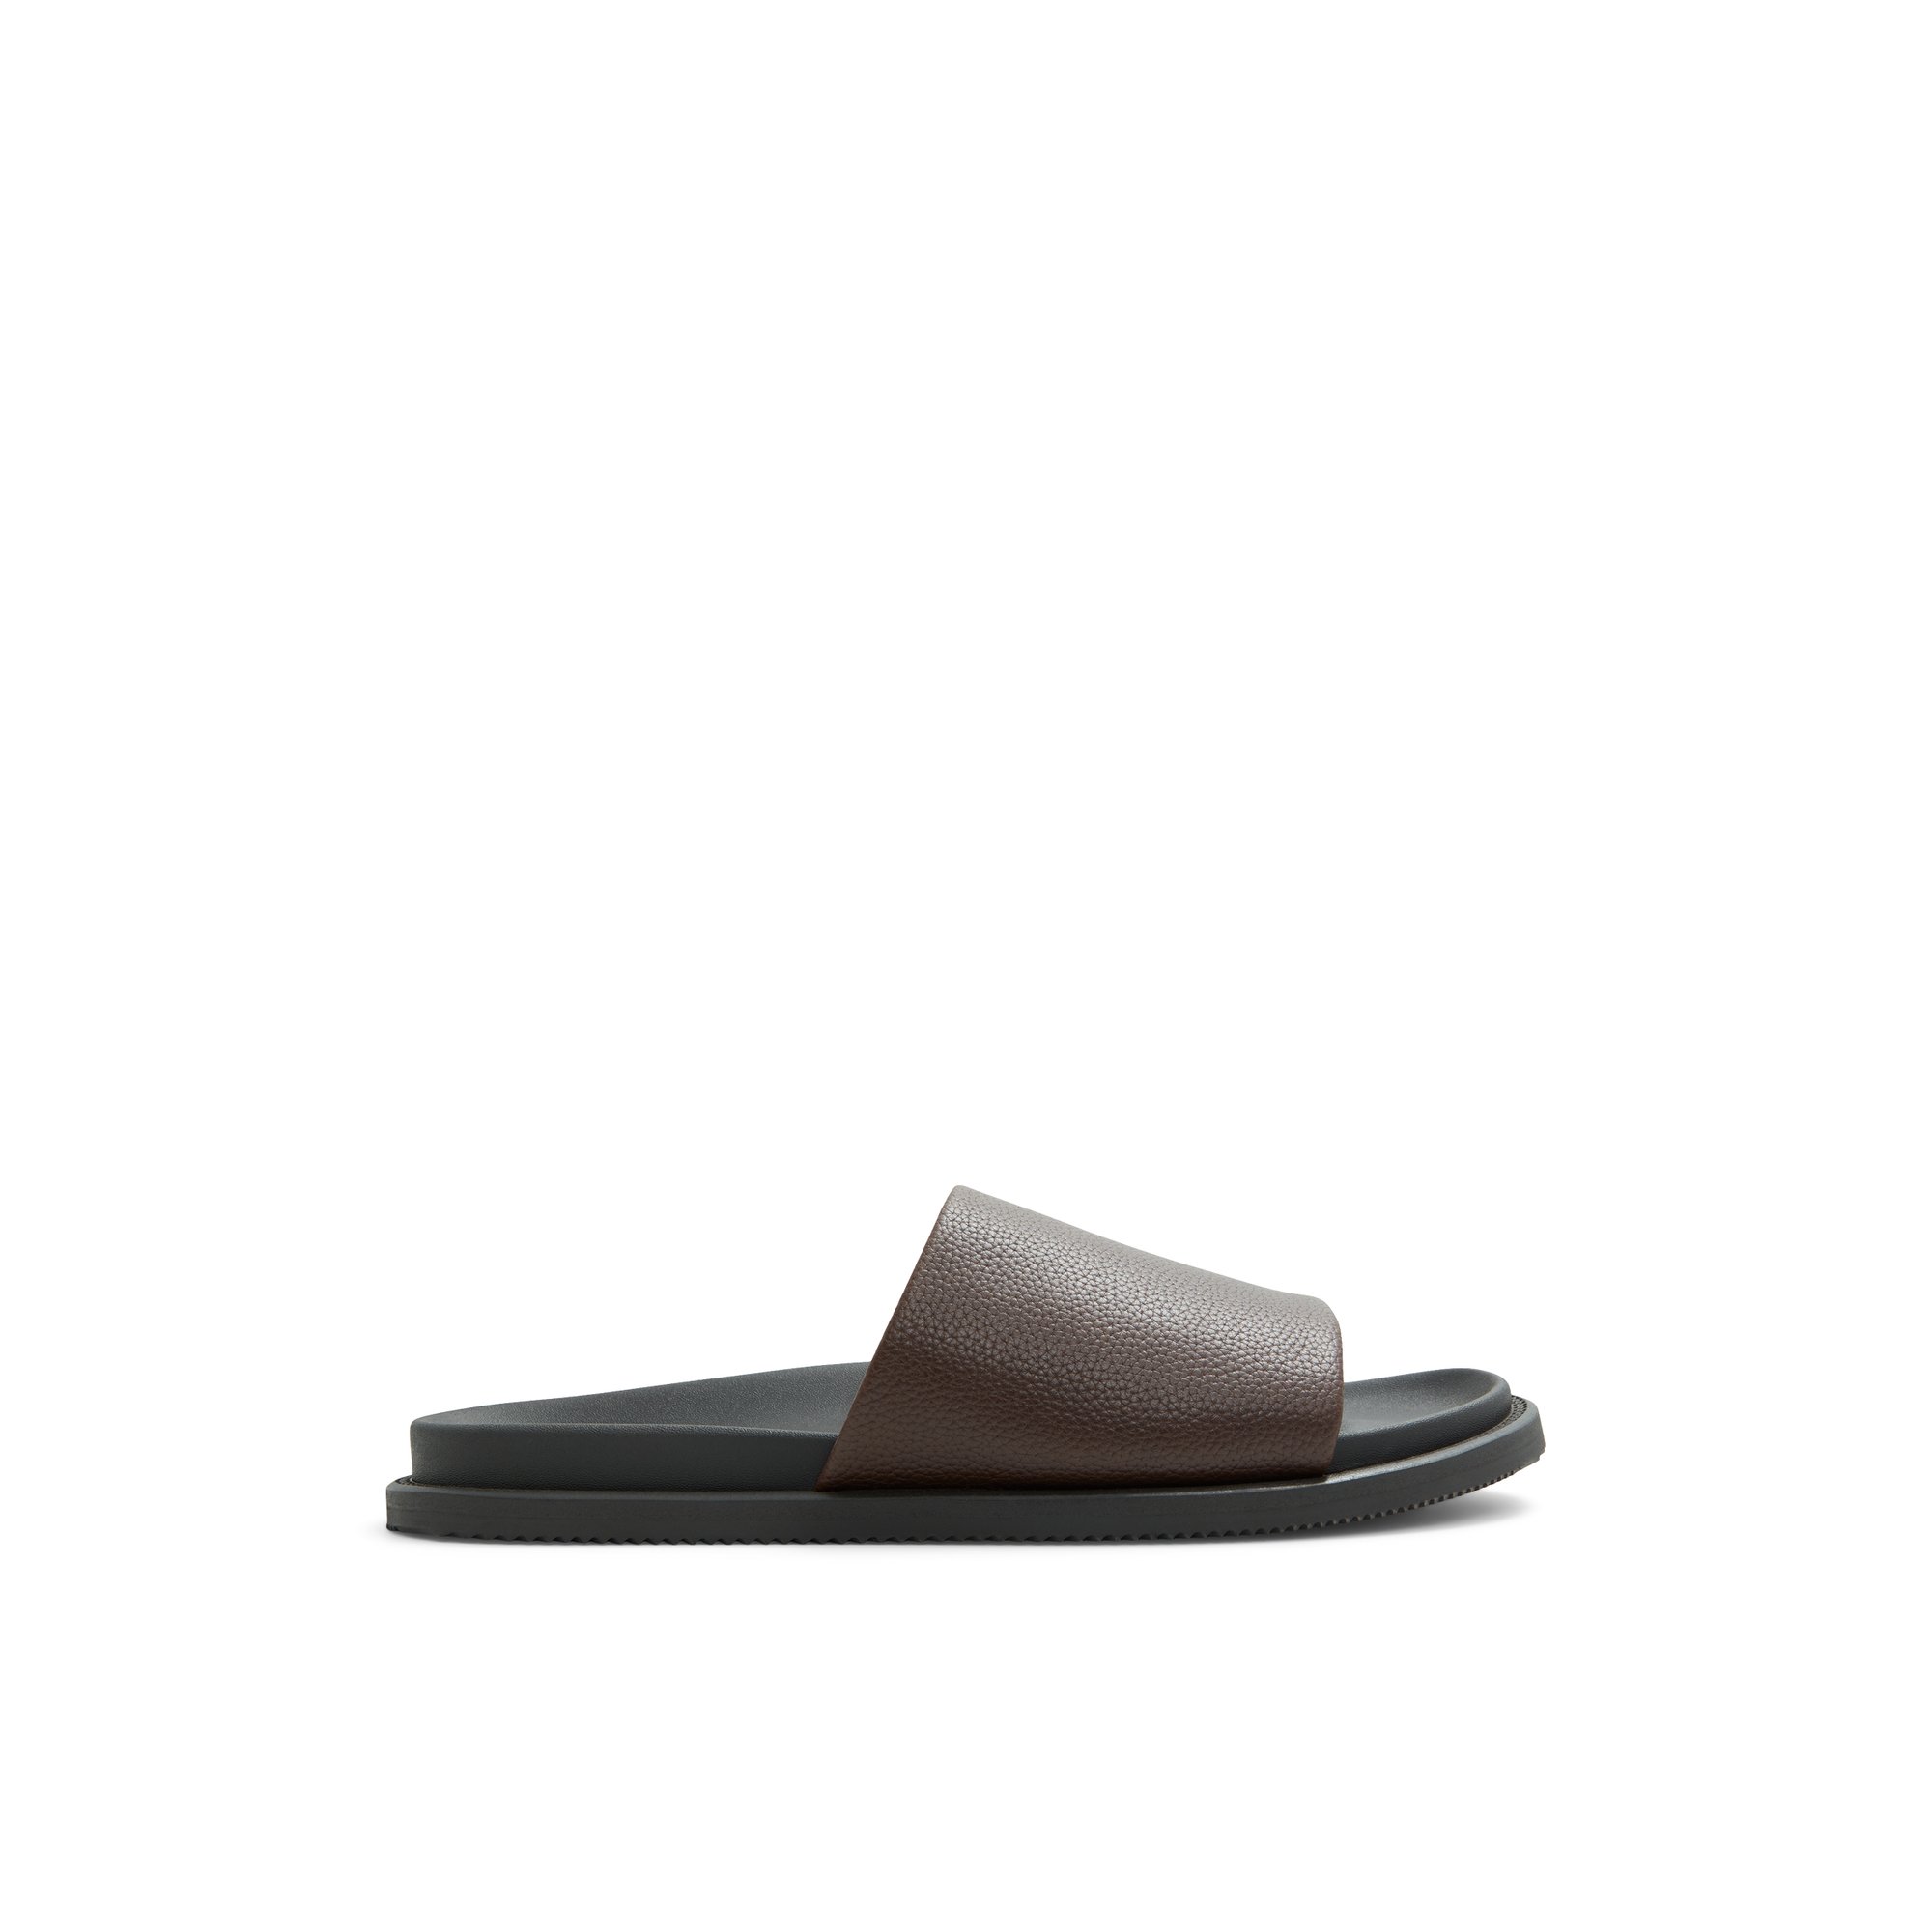 ALDO Gentslide - Men's Sandals - Brown